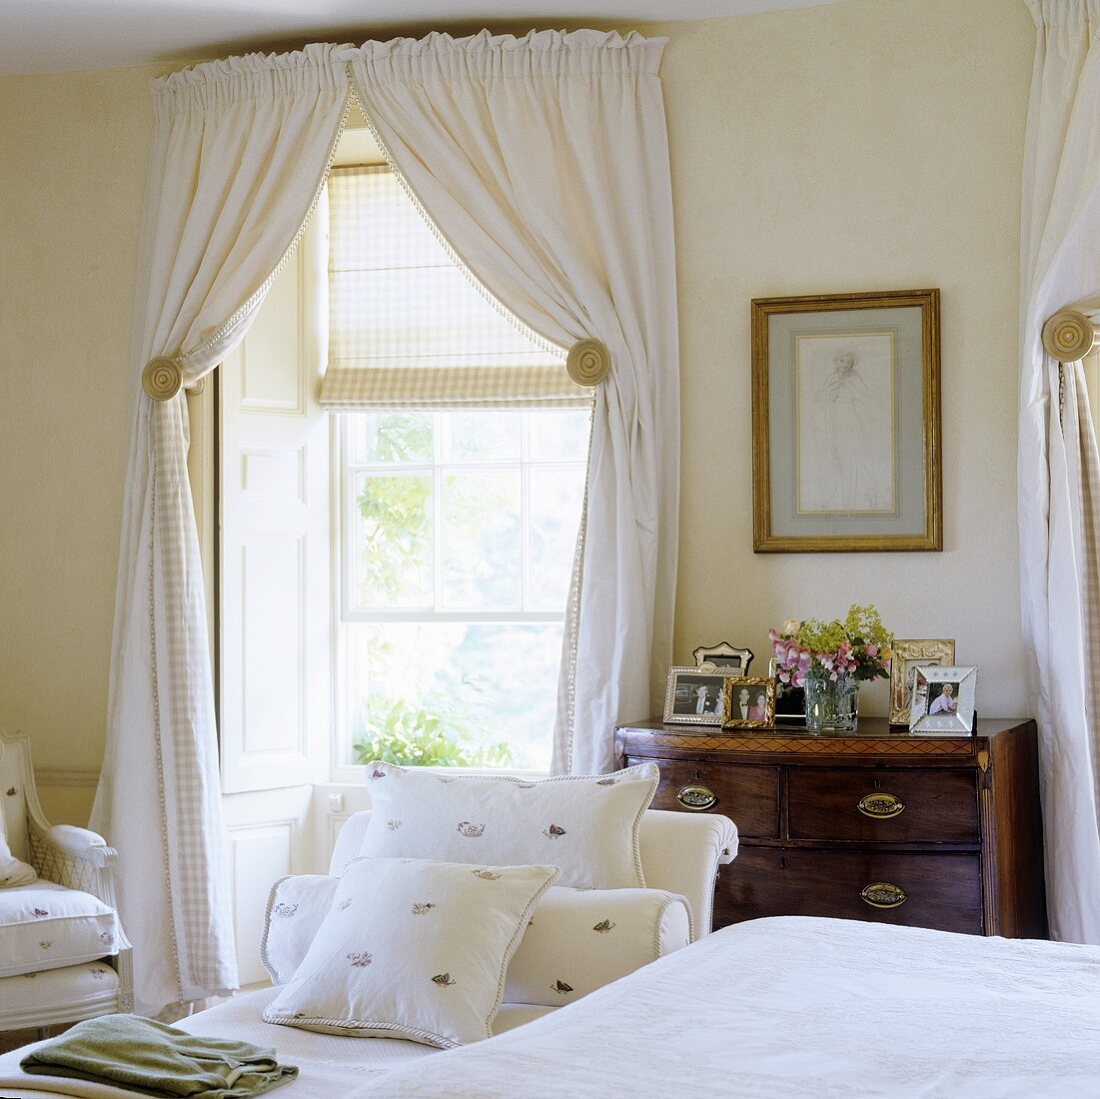 Schlafraum im eleganten Landhausstil mit weissen Vorhängen und Rollo am Fenster